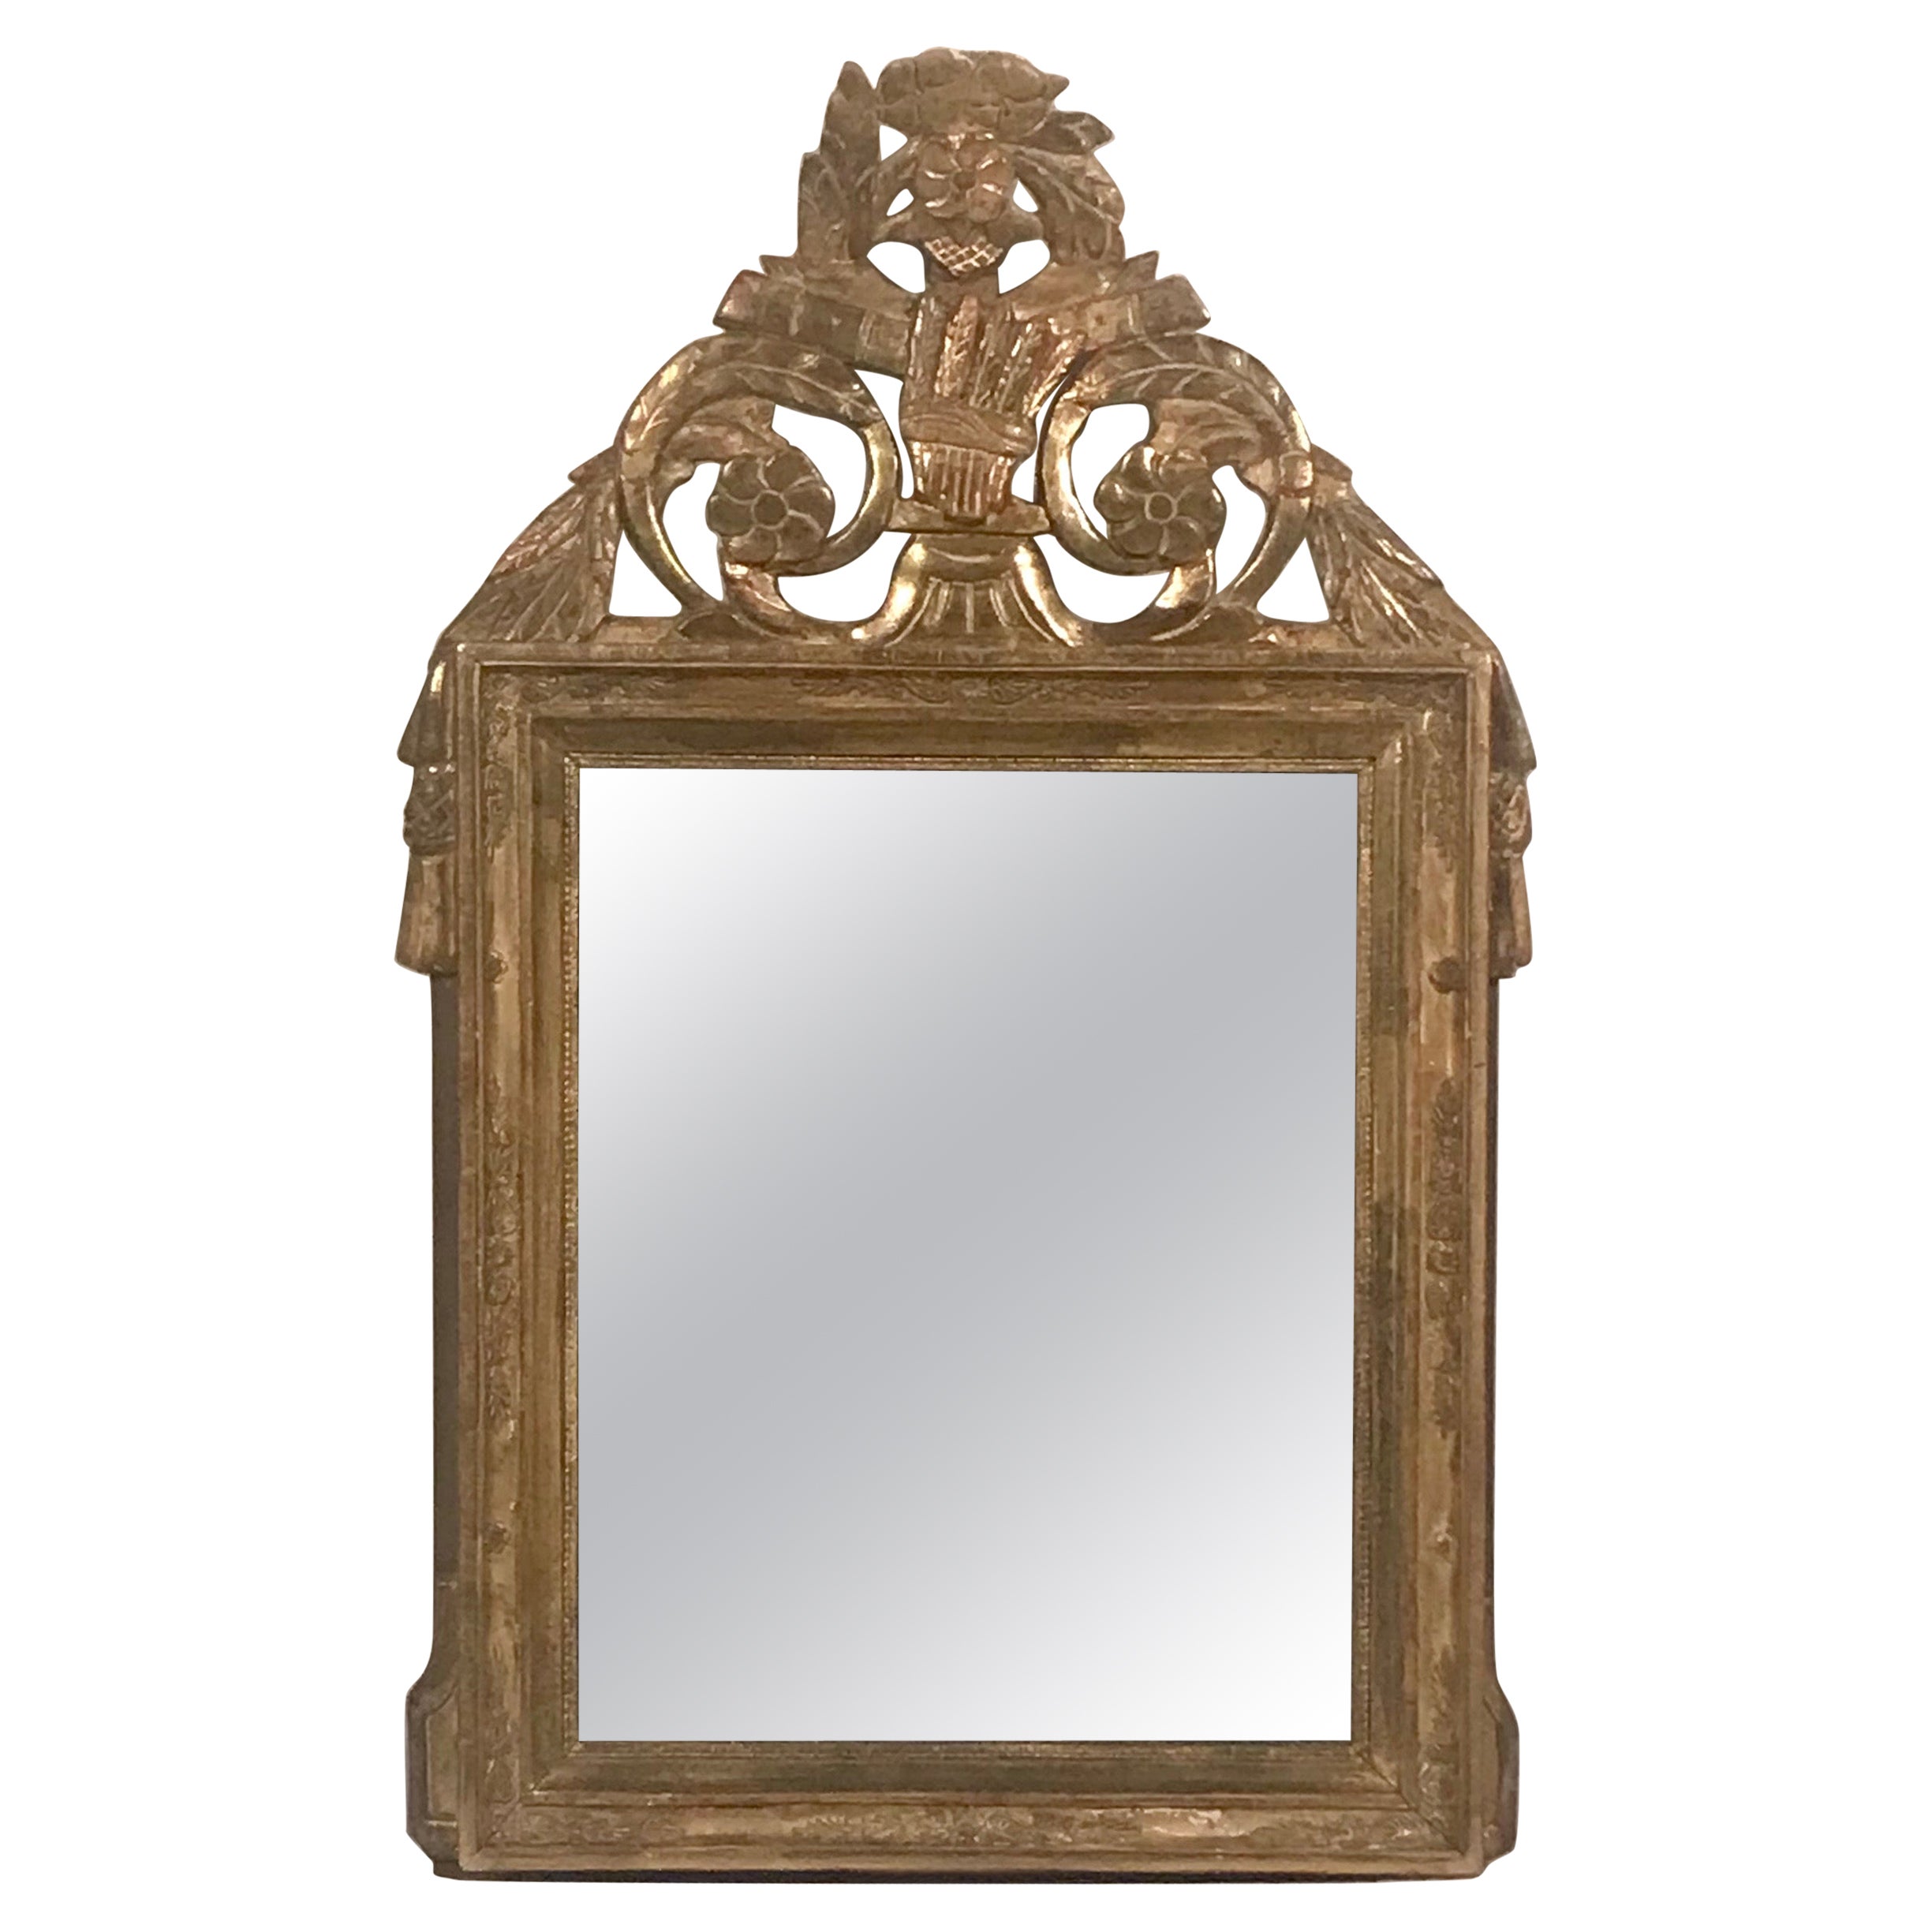 French Gilt Wood Mirror, Louis XVI Period 1780-1800